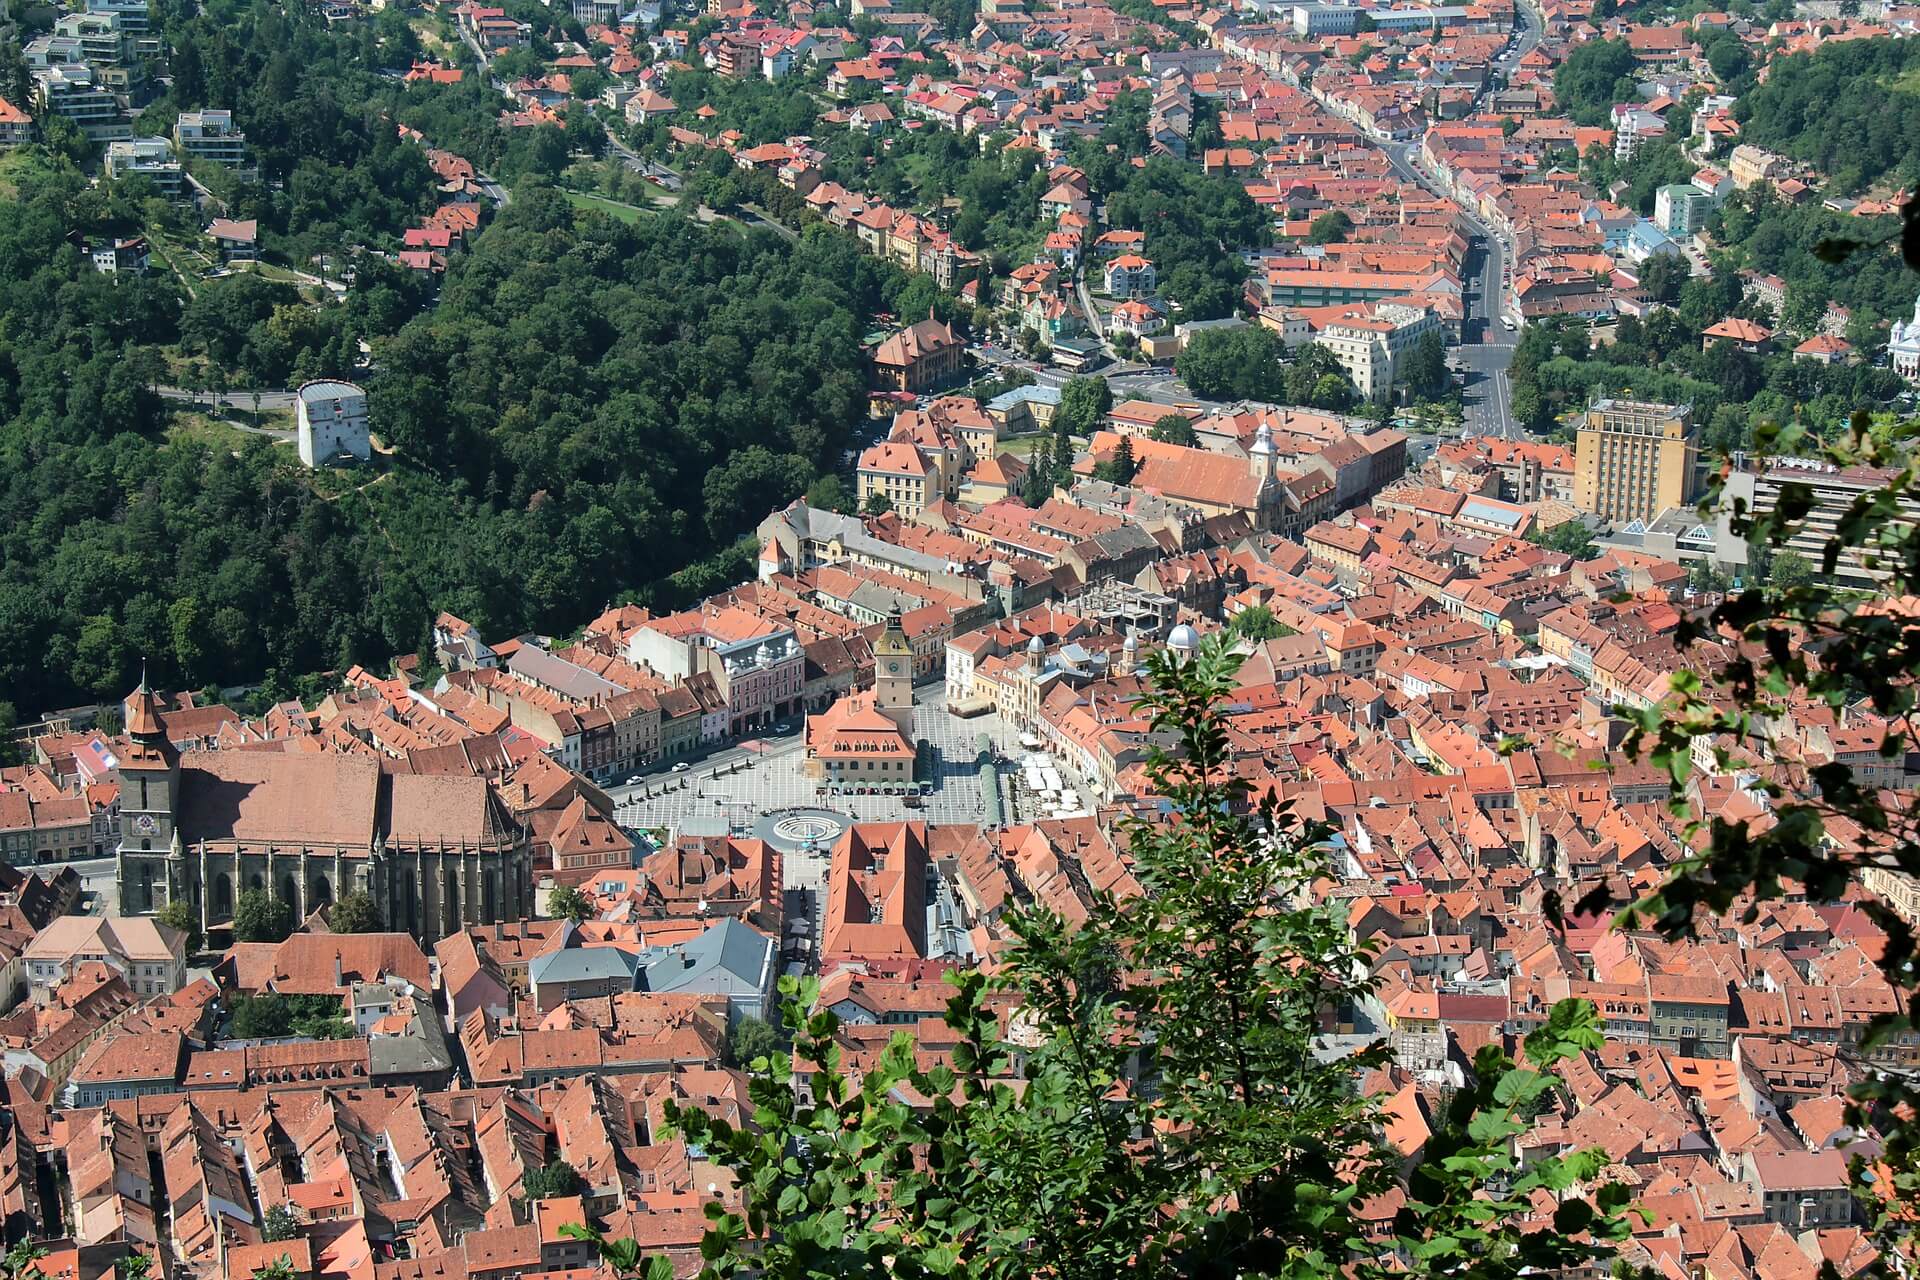 Direktflüge und Billigflüge nach Brașov